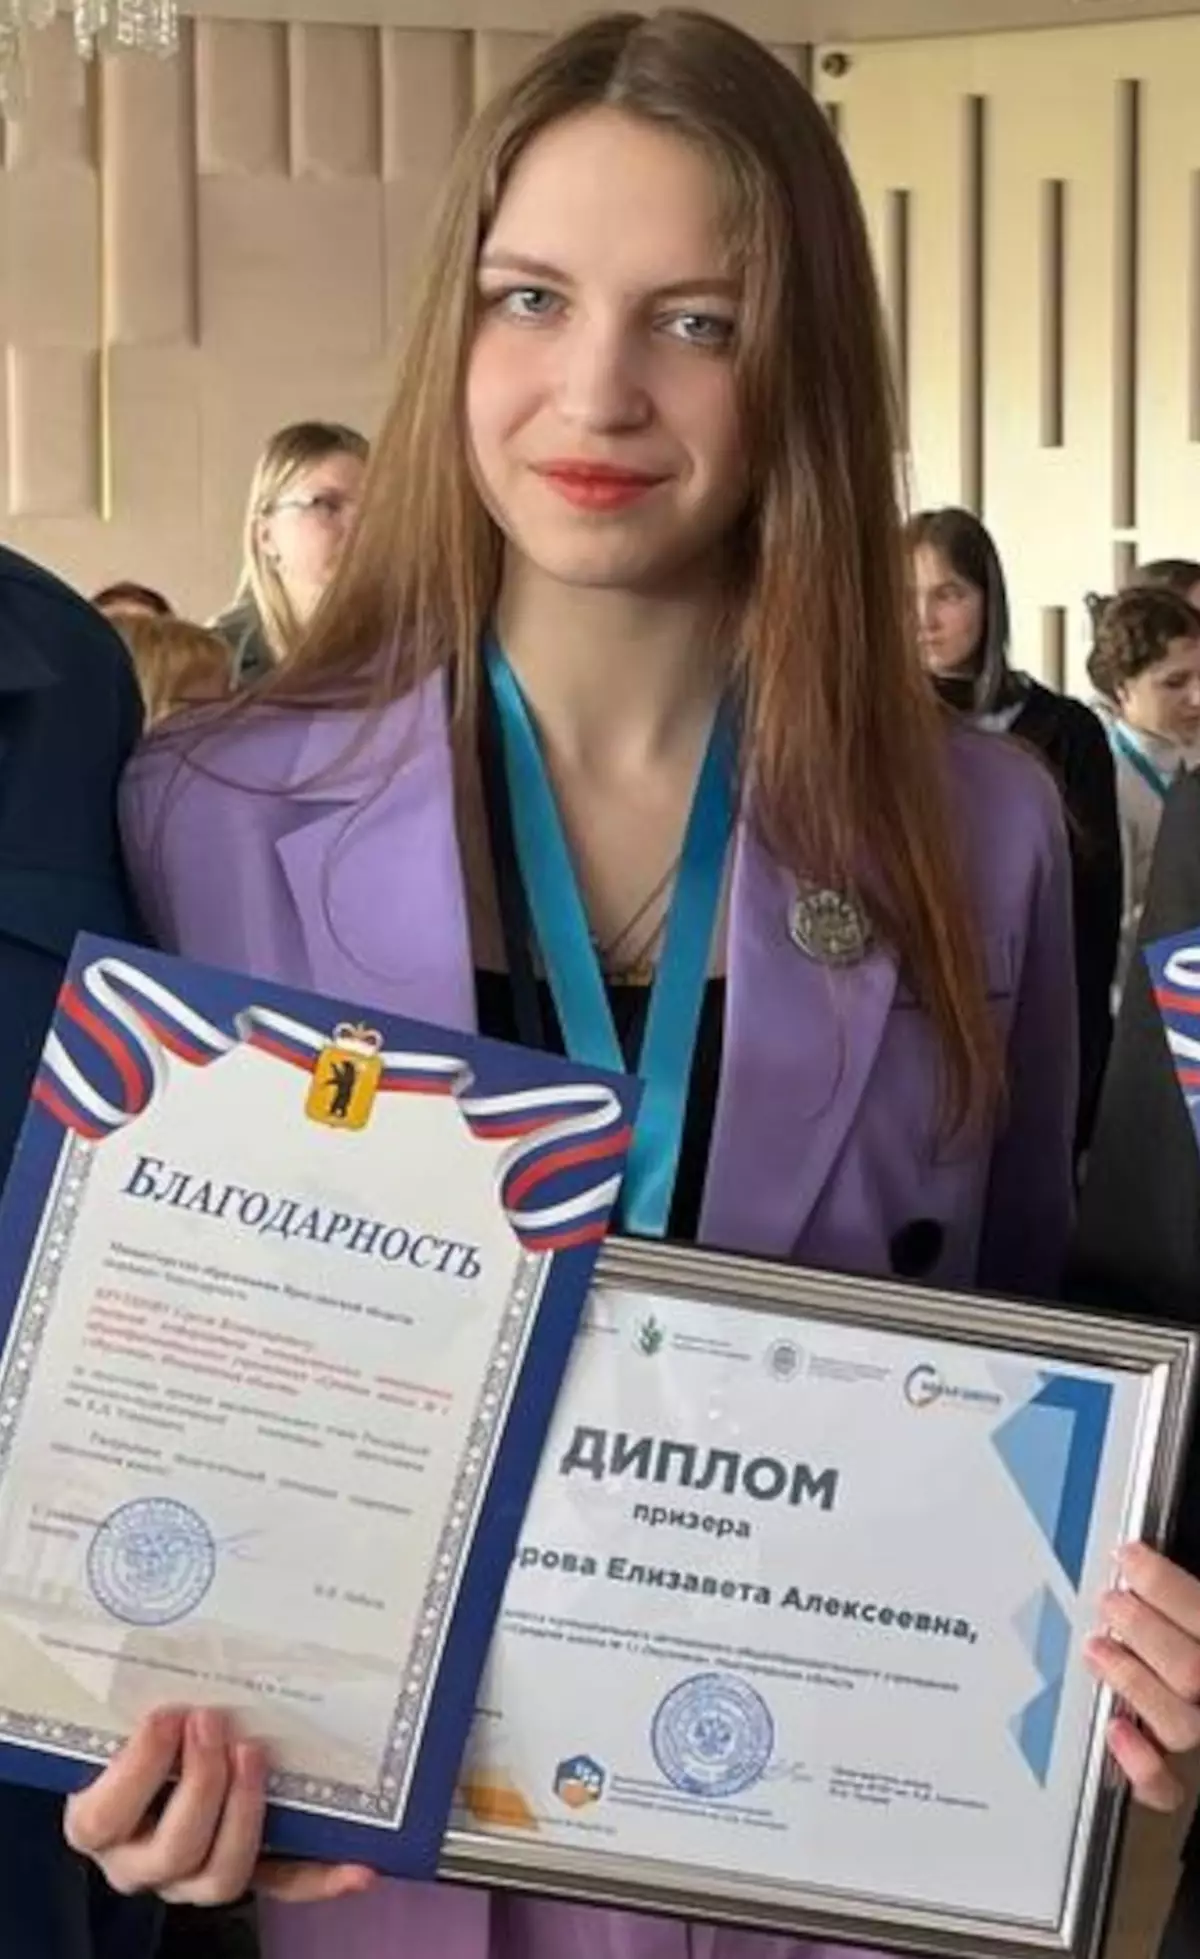 Победившая в Российской педагогической олимпиаде школьница из Окуловки будет поступать на учителя